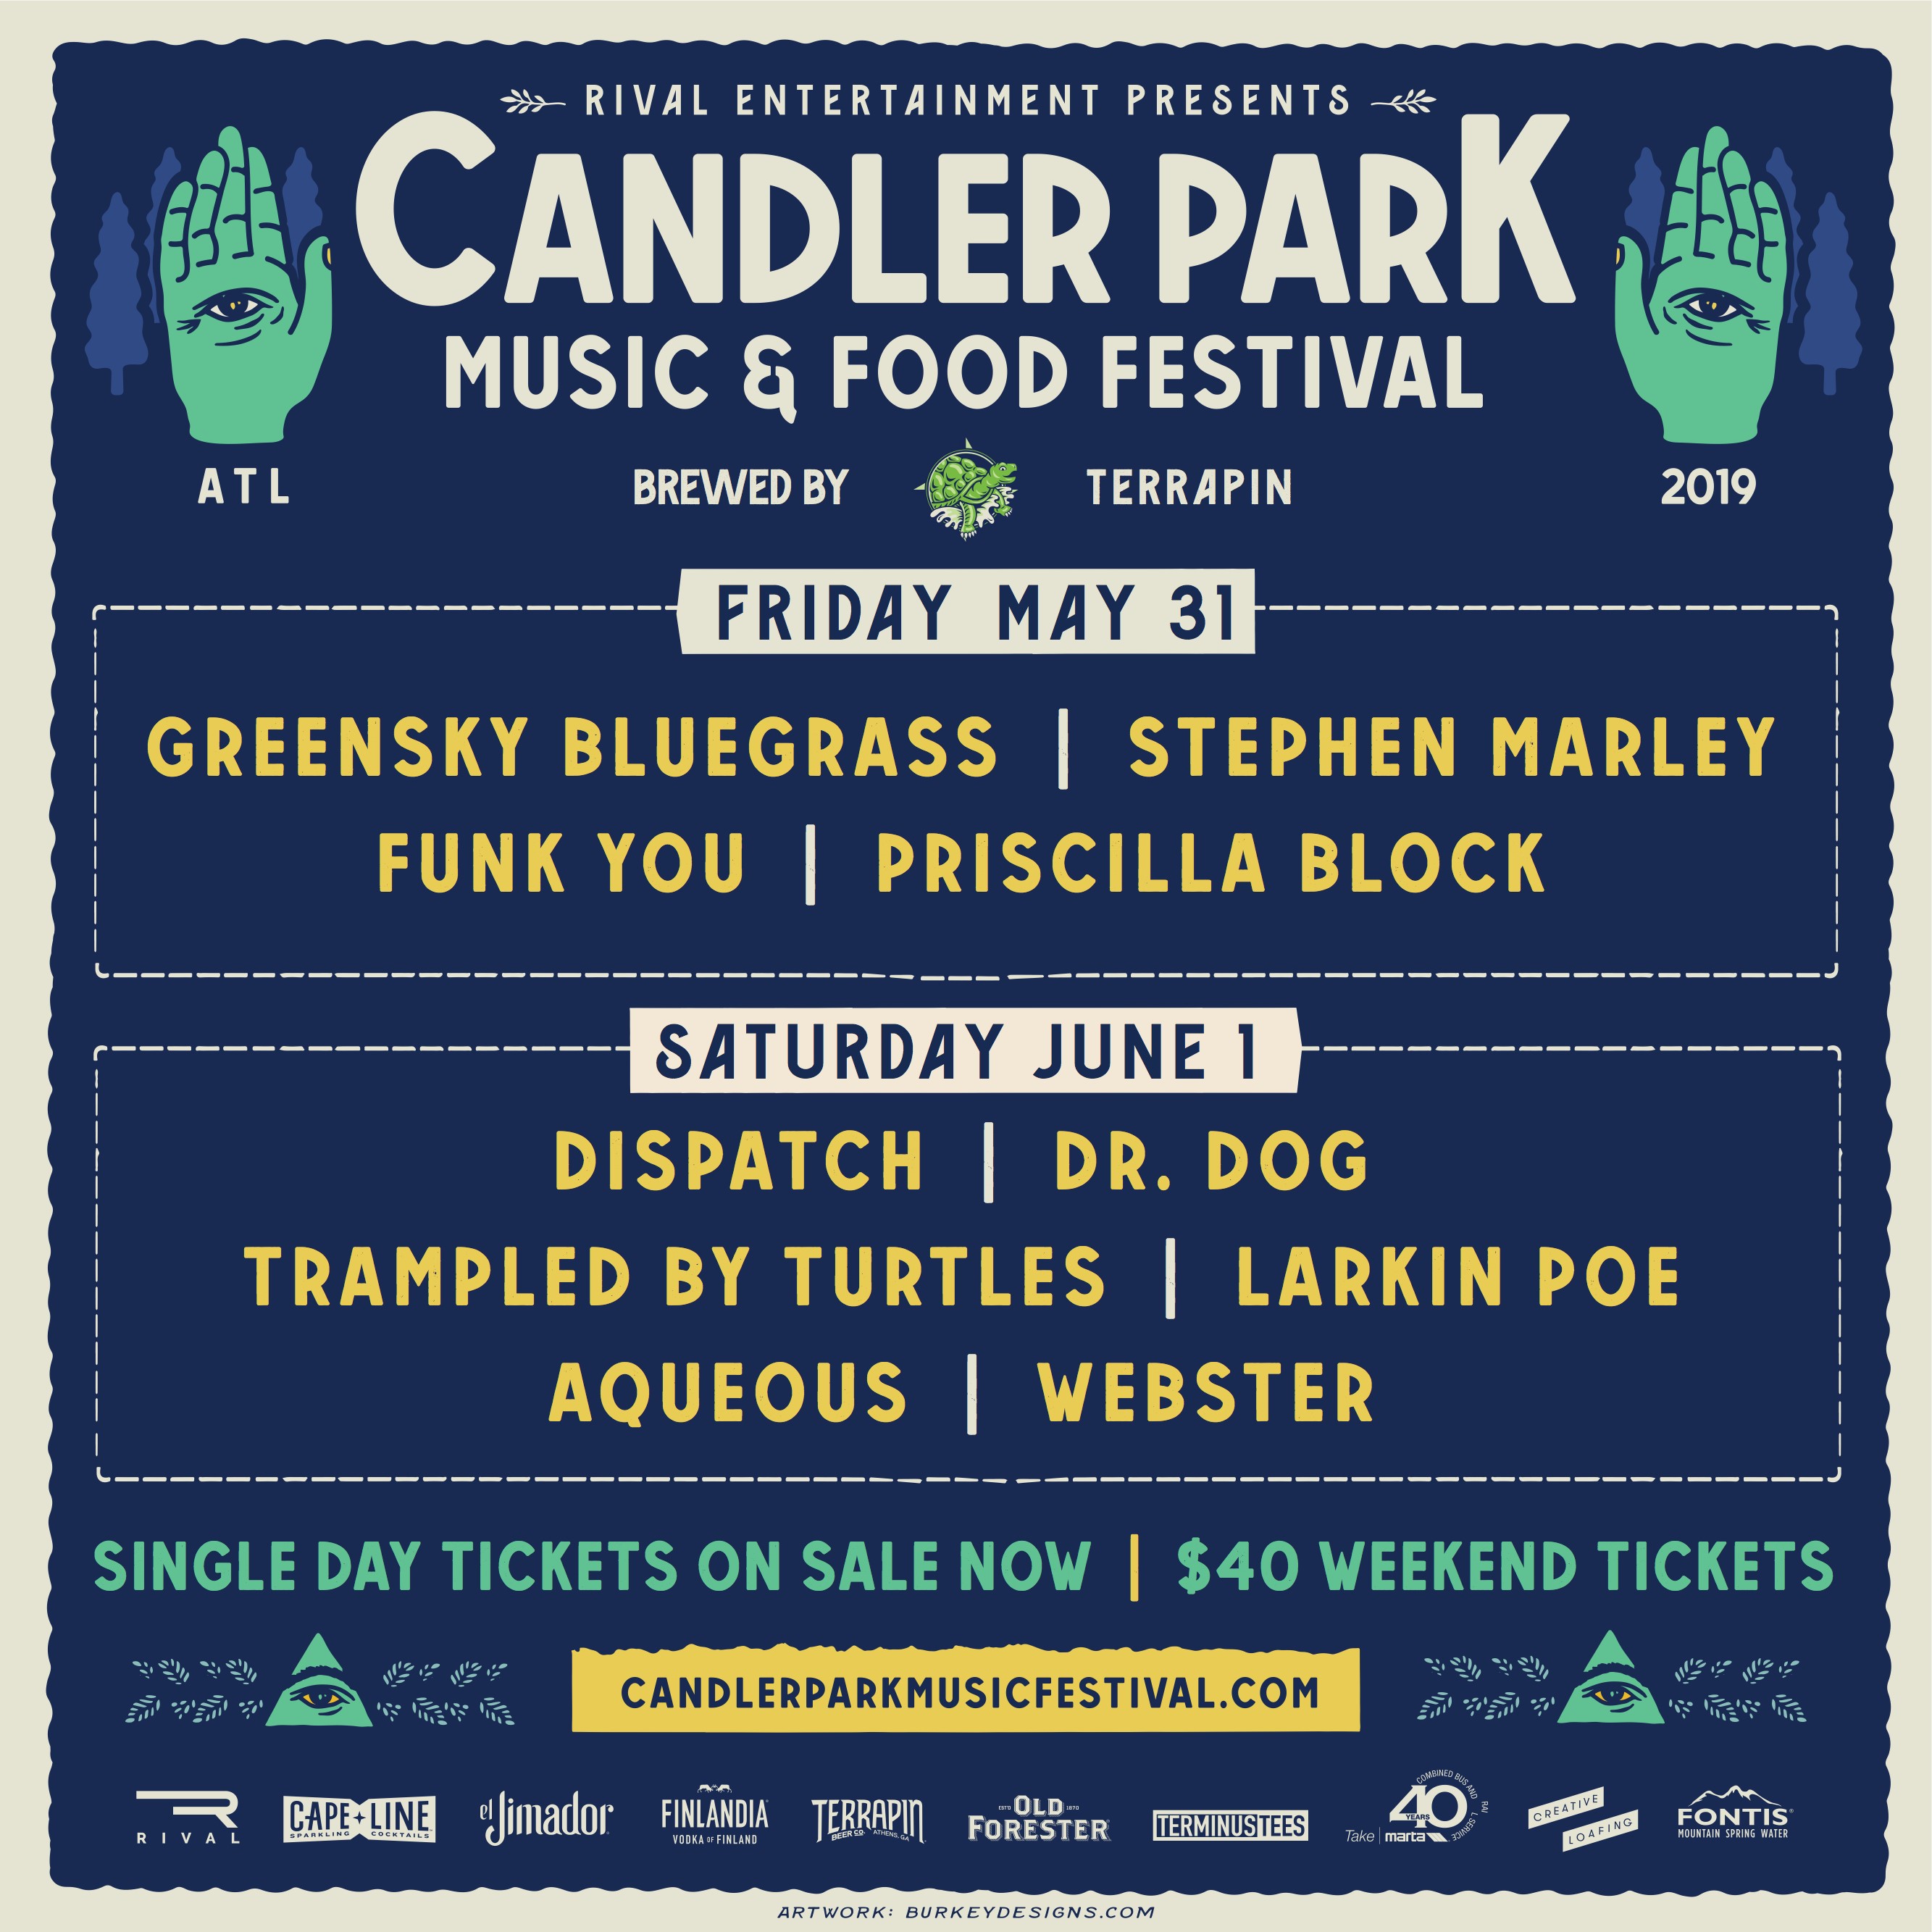 Candler Park Music & Food Festival Announces 2019 Lineup